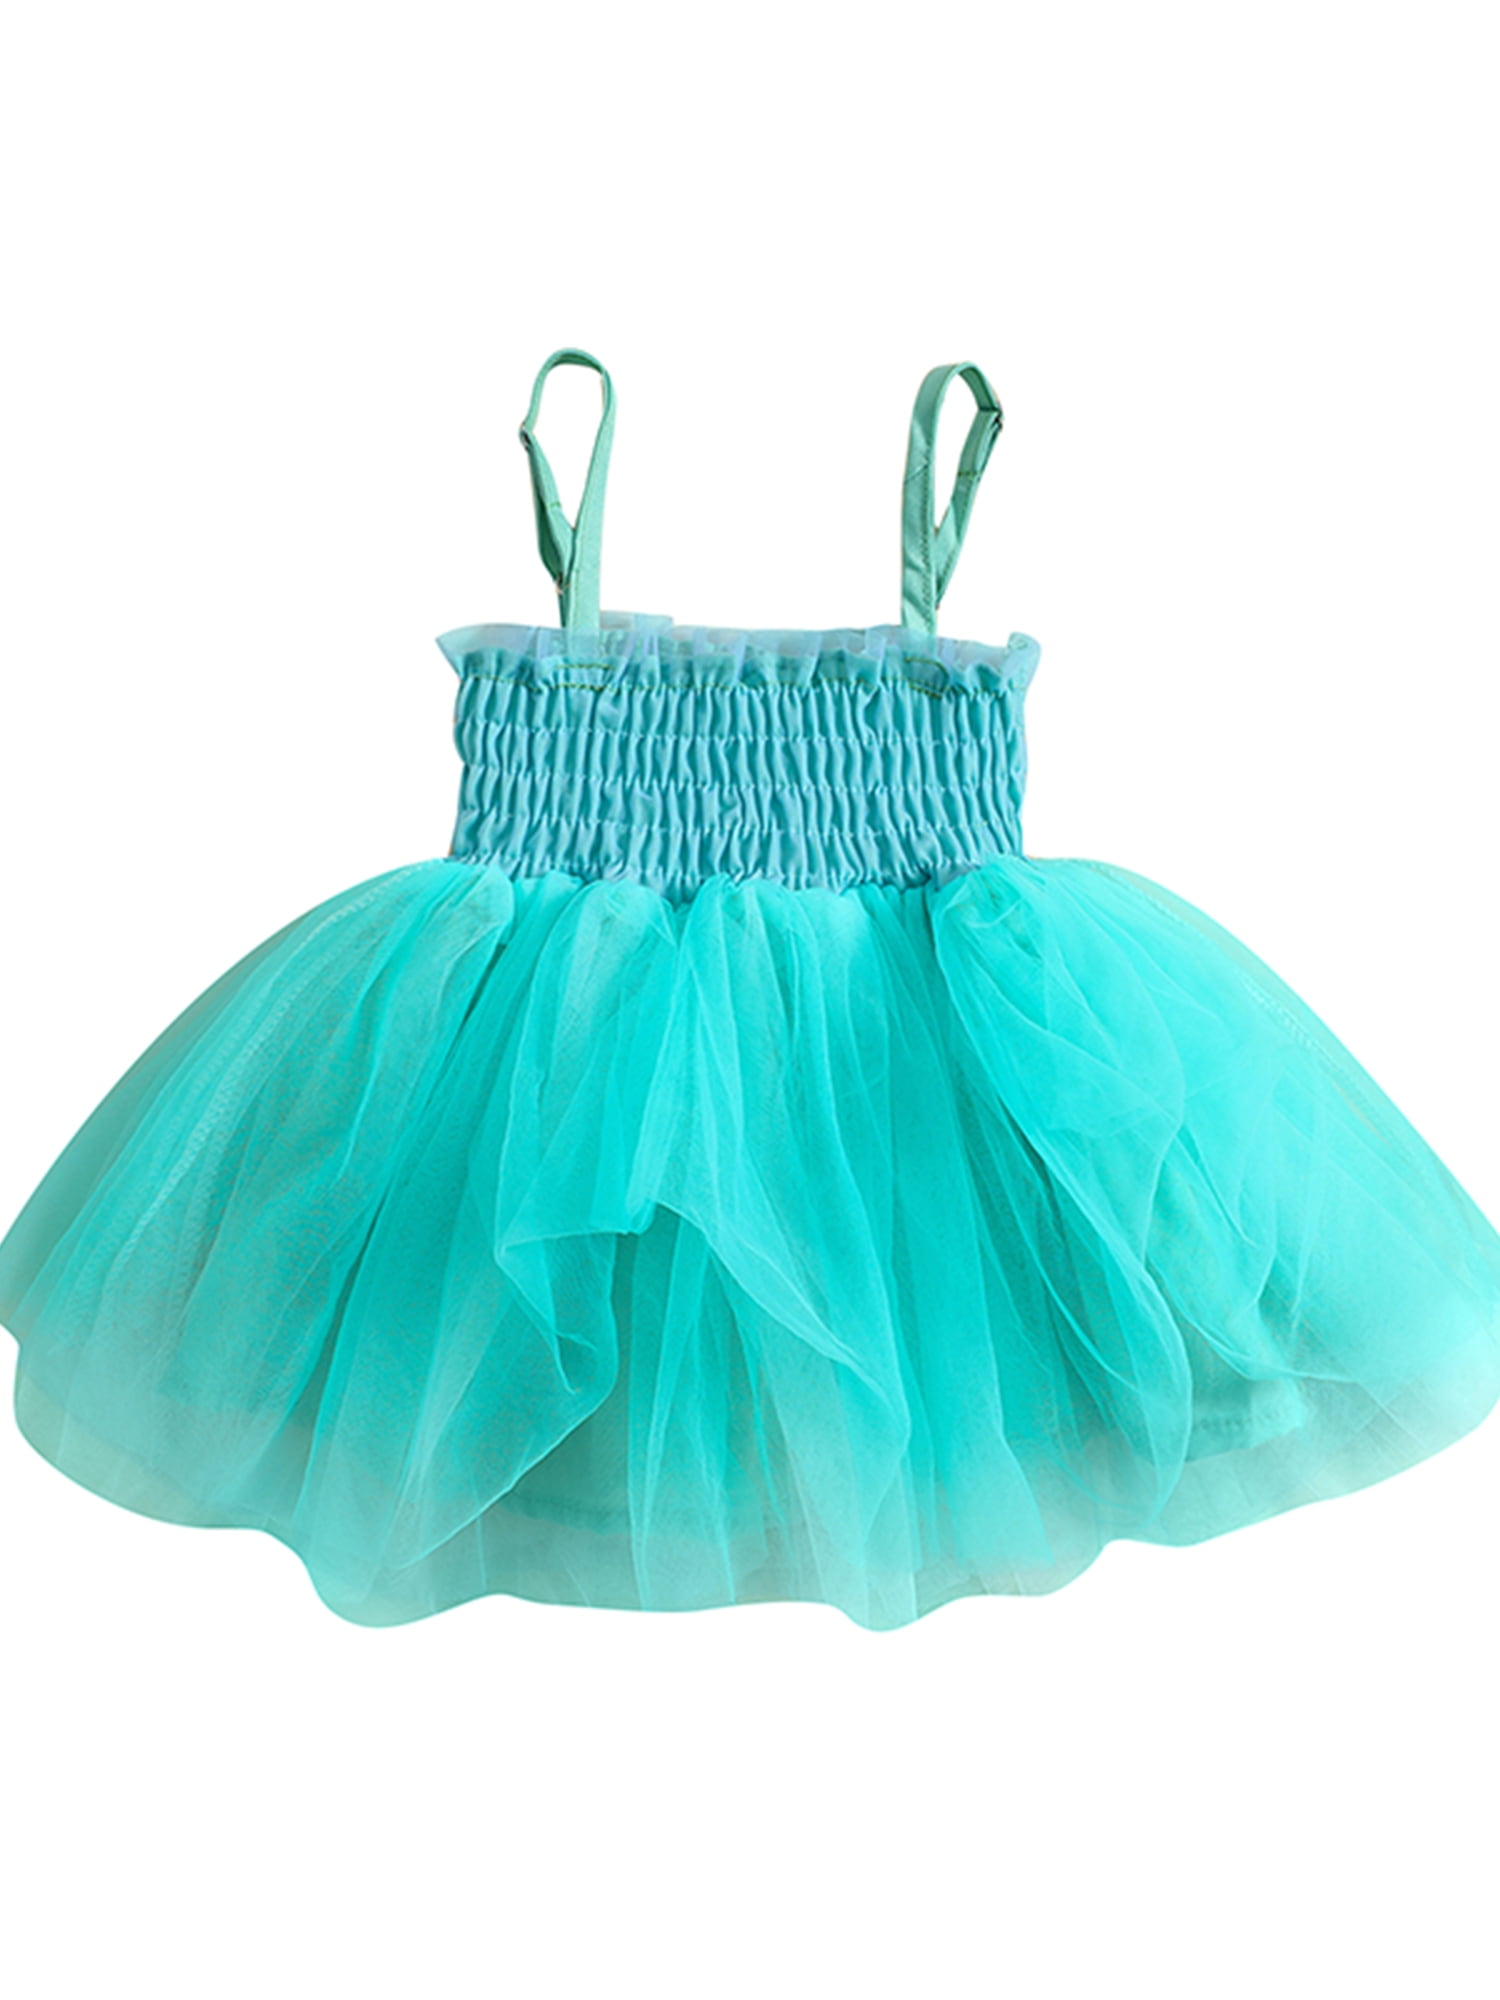 Frock14 – MiniMoi | Kids Wear - Buy Kids Clothes & Dresses, Online